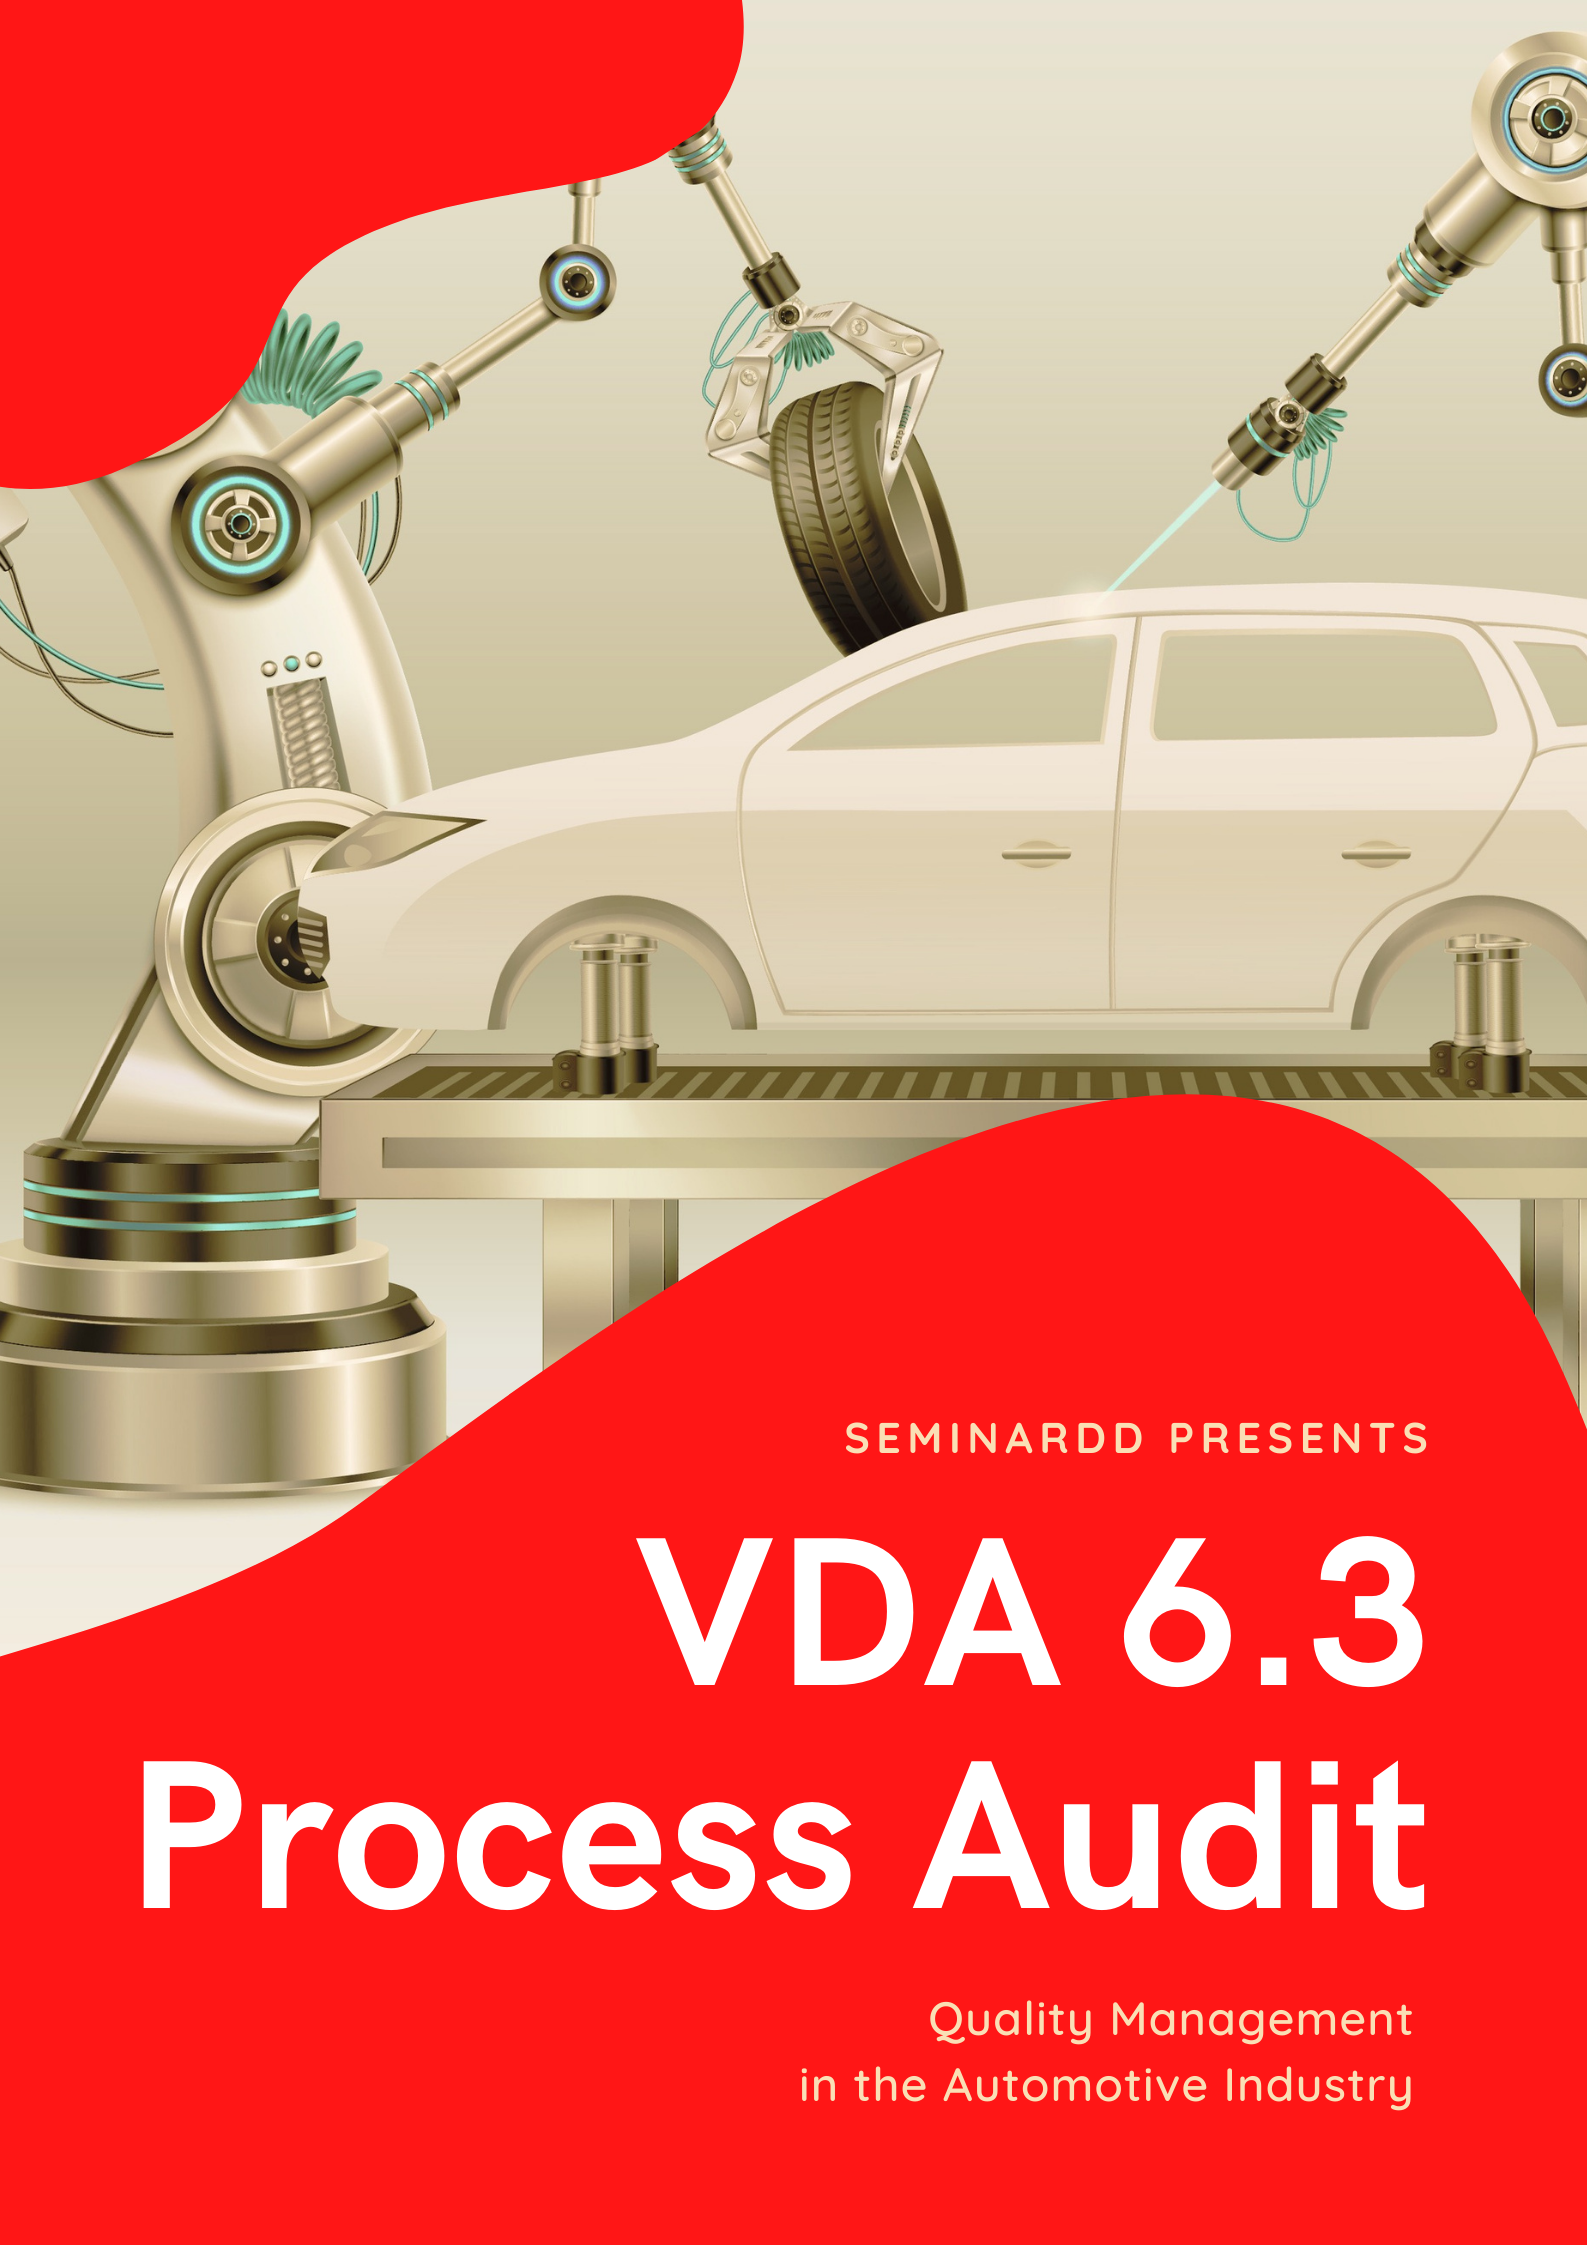 อบรม การตีความ และการประยุกต์ใช้ ข้อกำหนด VDA6.3 Process Audit